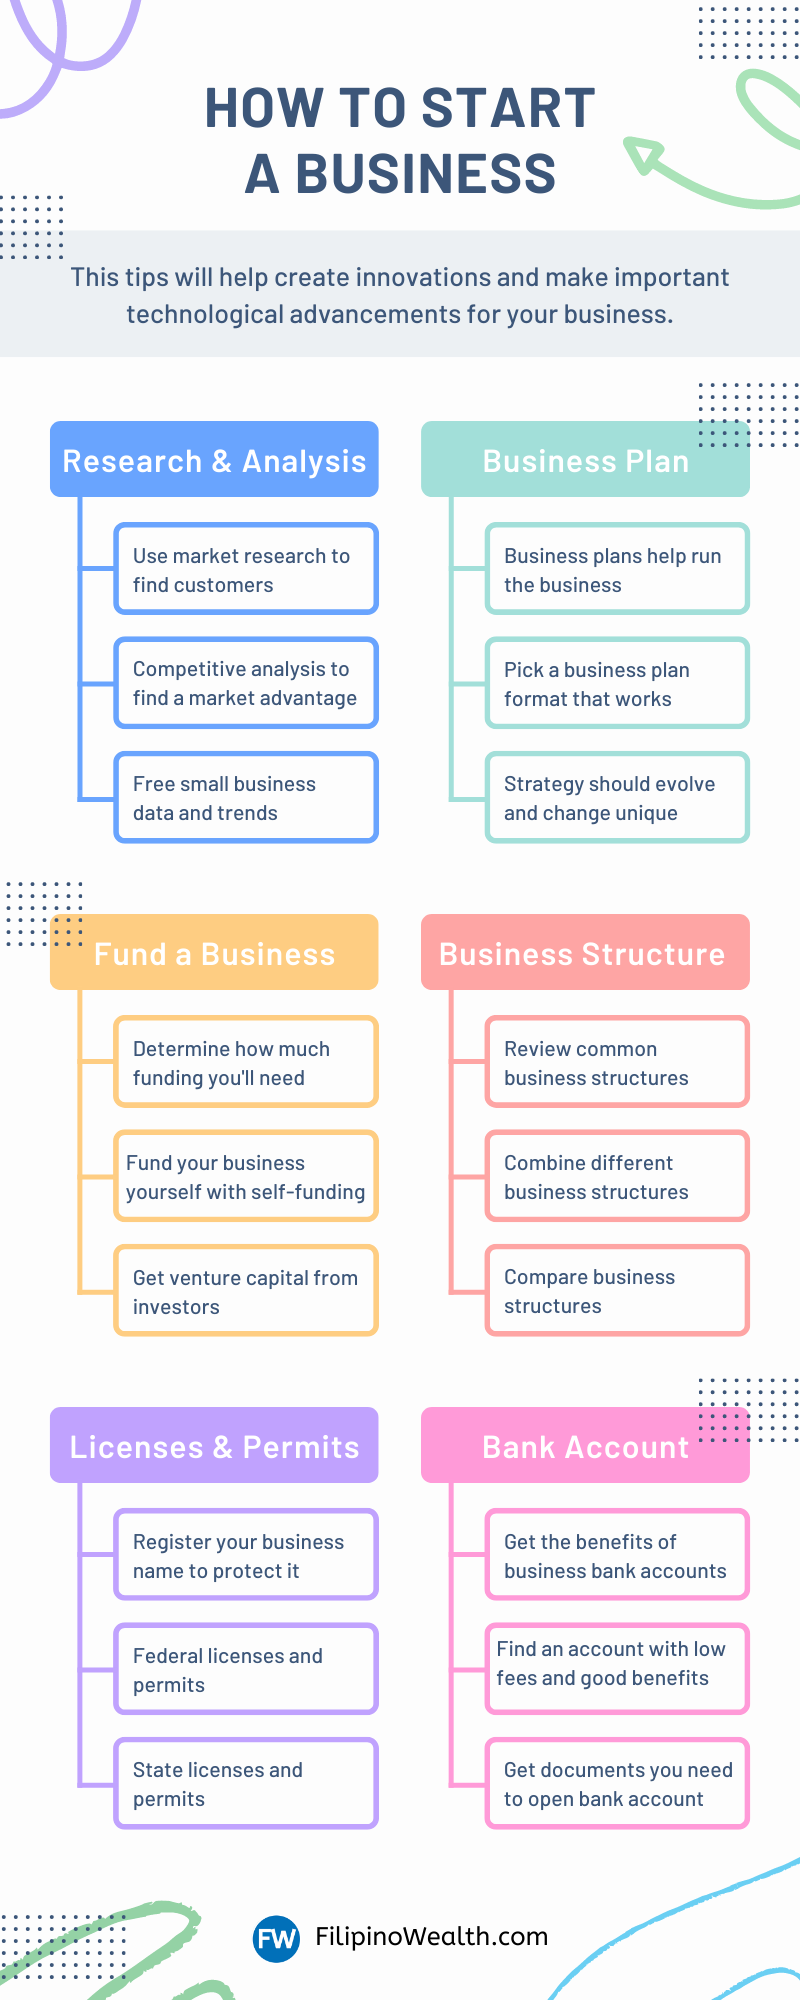 unique business ideas philippines 